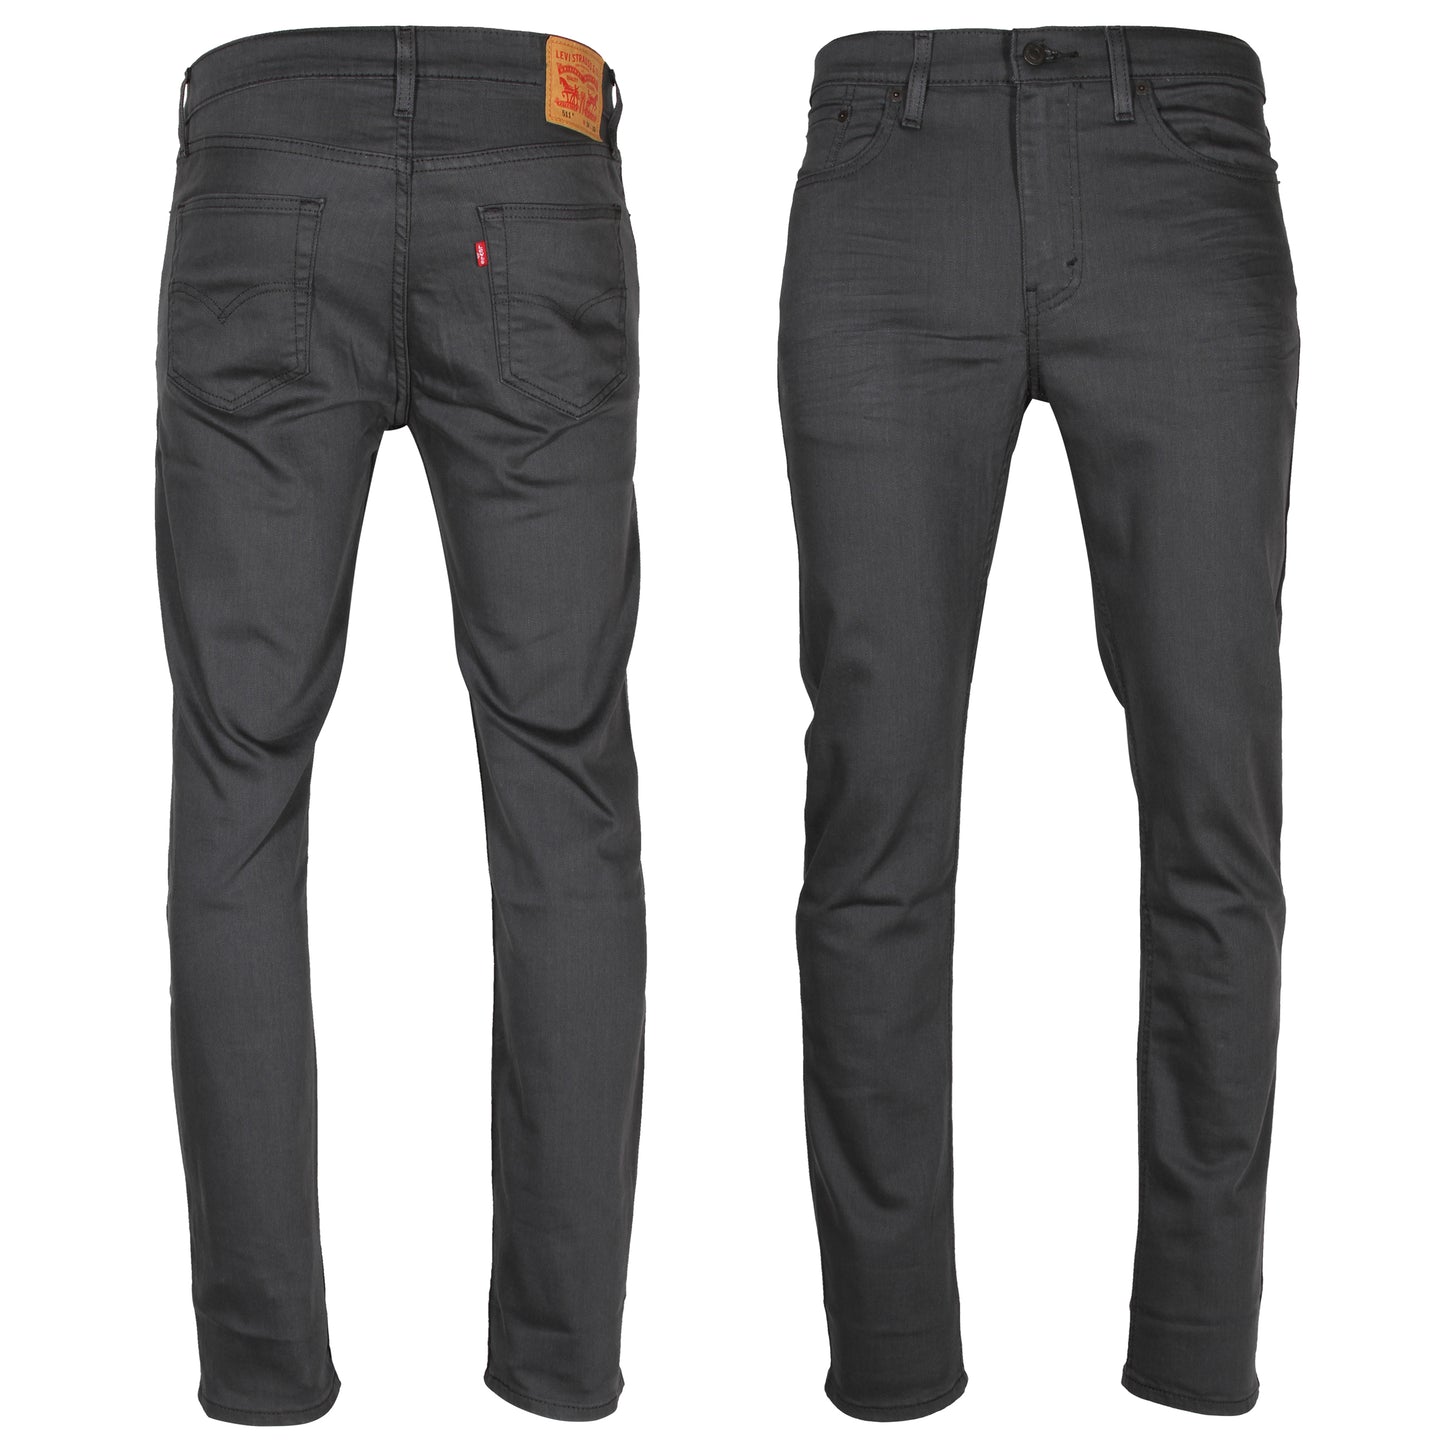 Levi’s 511 Slim Fit Men's Jeans Wash: Grey/Black 3D Style# 04511-2272